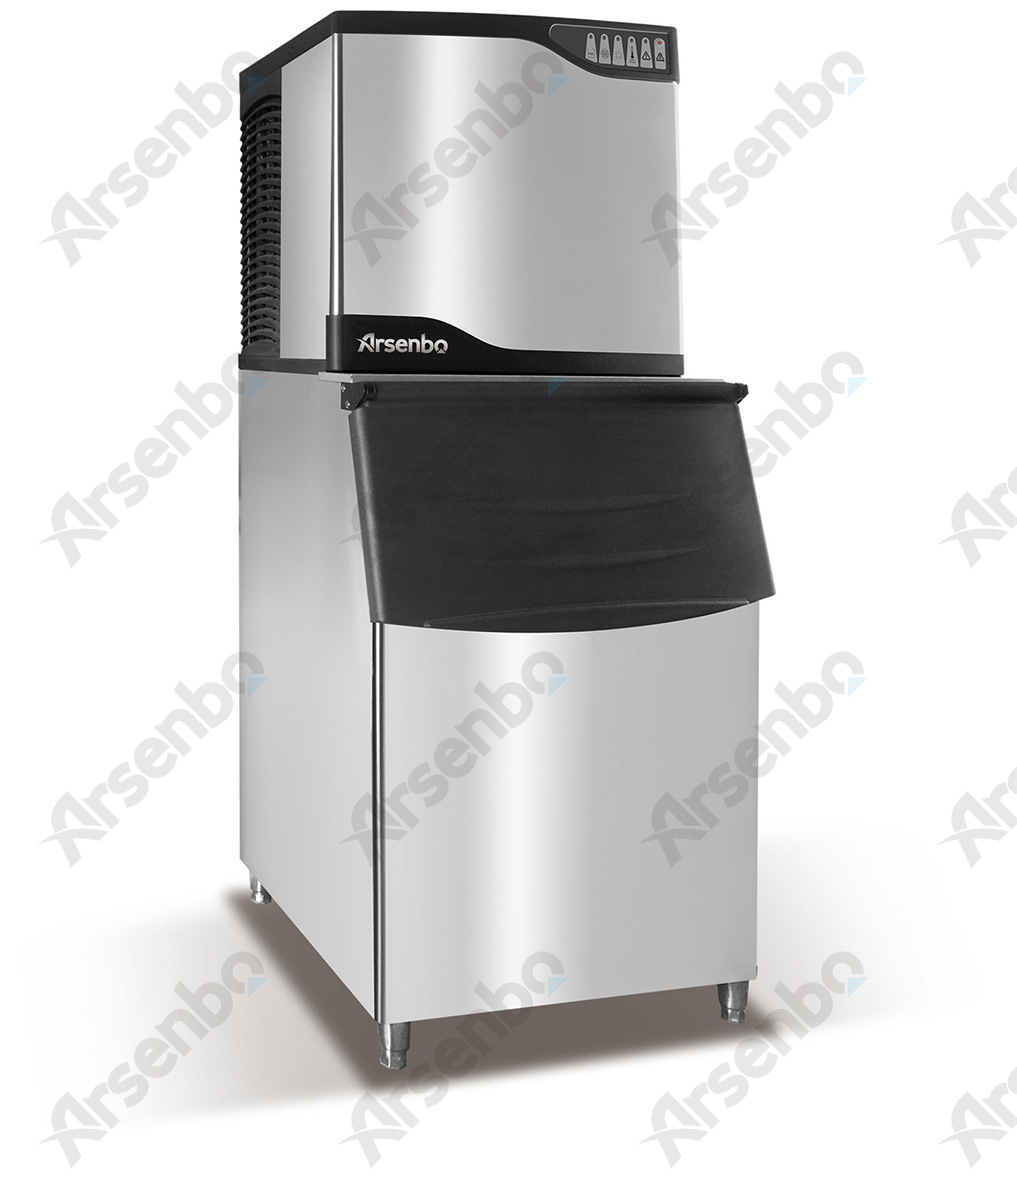 电影院可乐制冰机冷藏柜 大型方冰机 商用全自动制冰方块冰